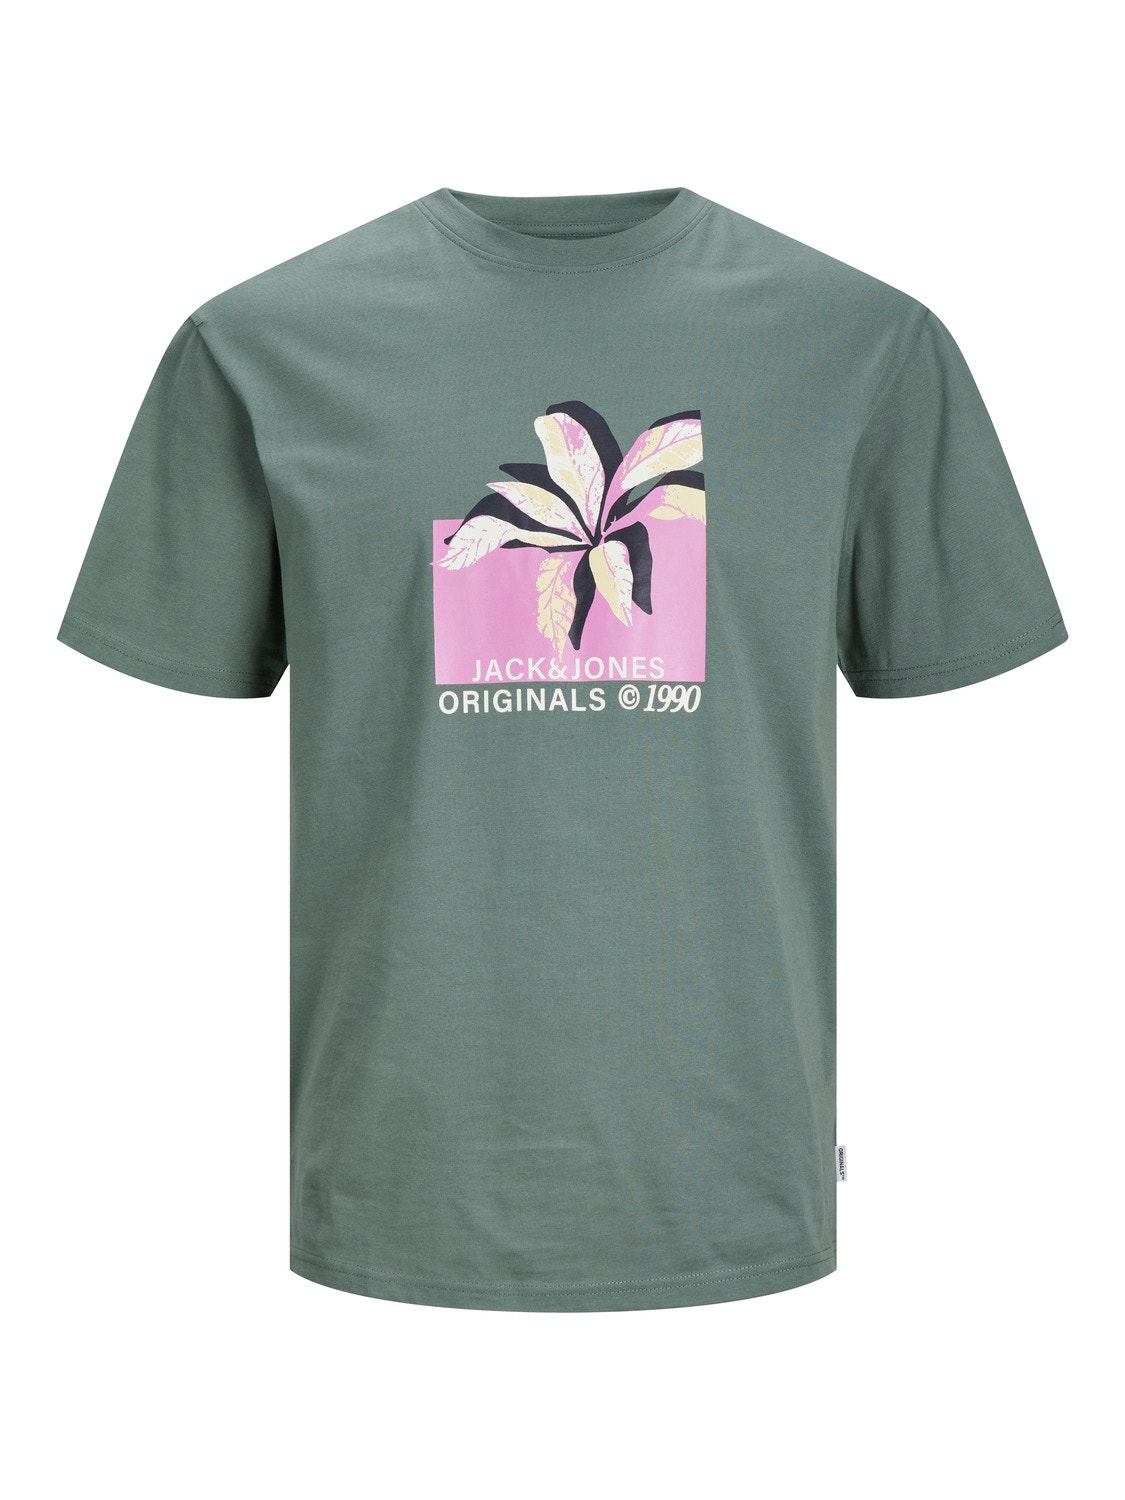 Jack & Jones Printed T-shirt Mini -Laurel Wreath - 12257424